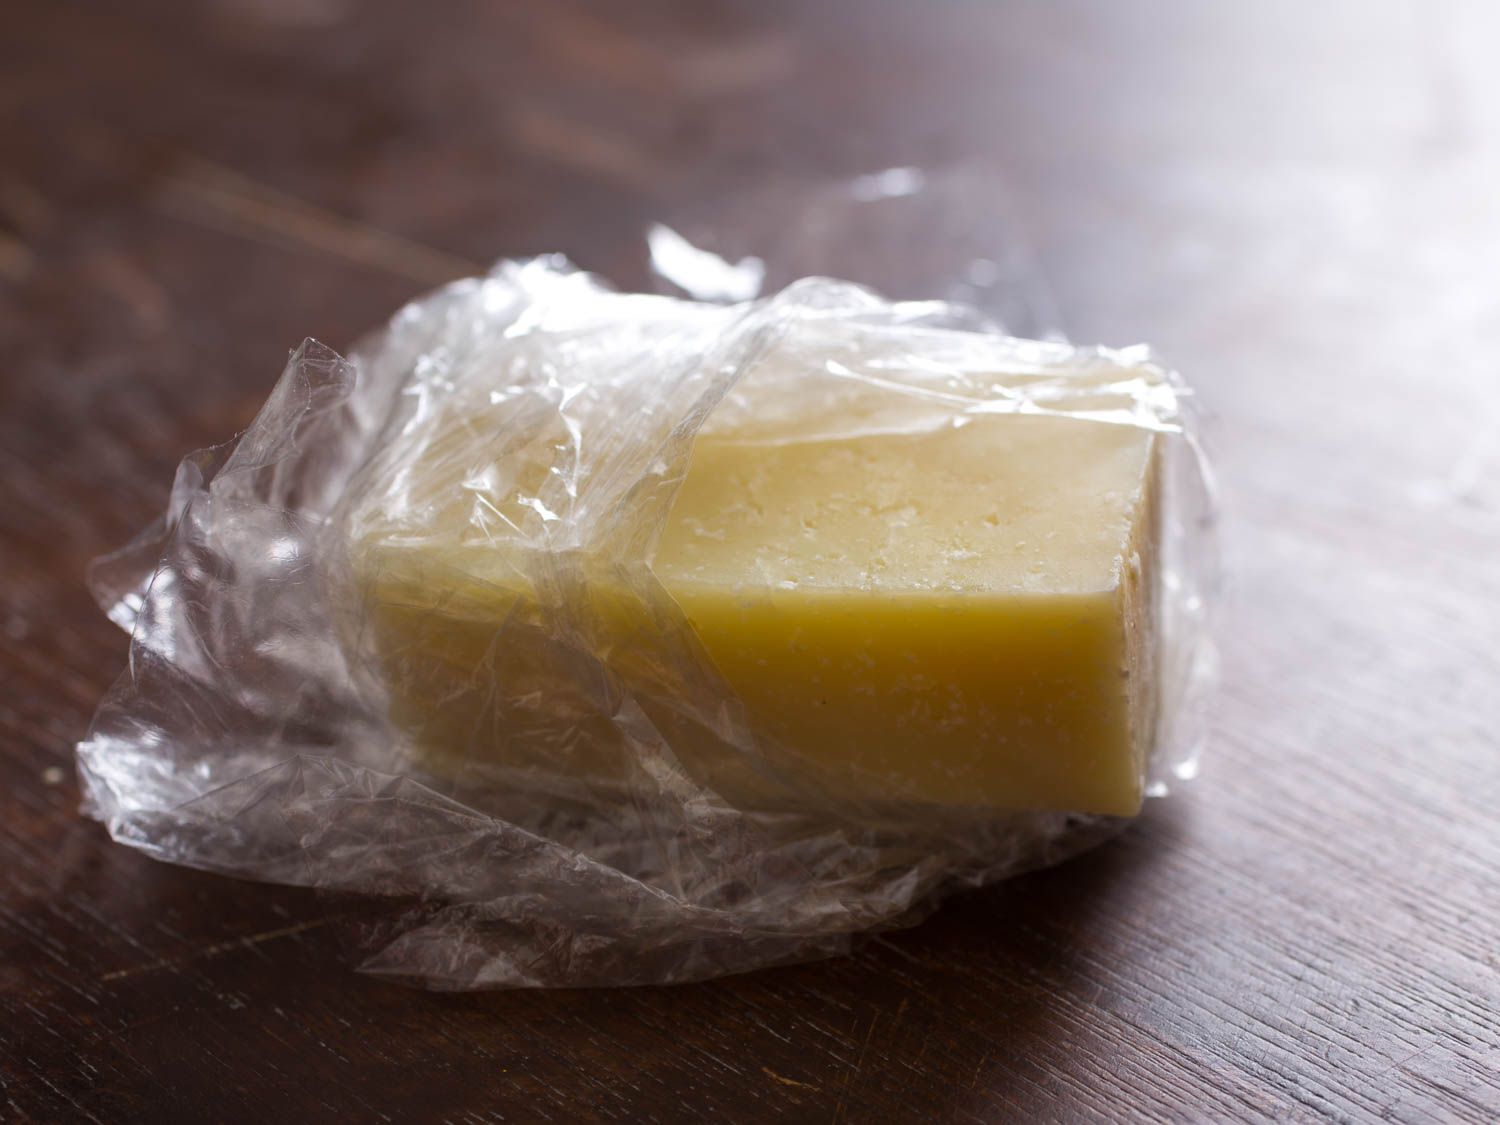 一块被保鲜膜包裹得很糟糕的奶酪，有些奶酪暴露在外。